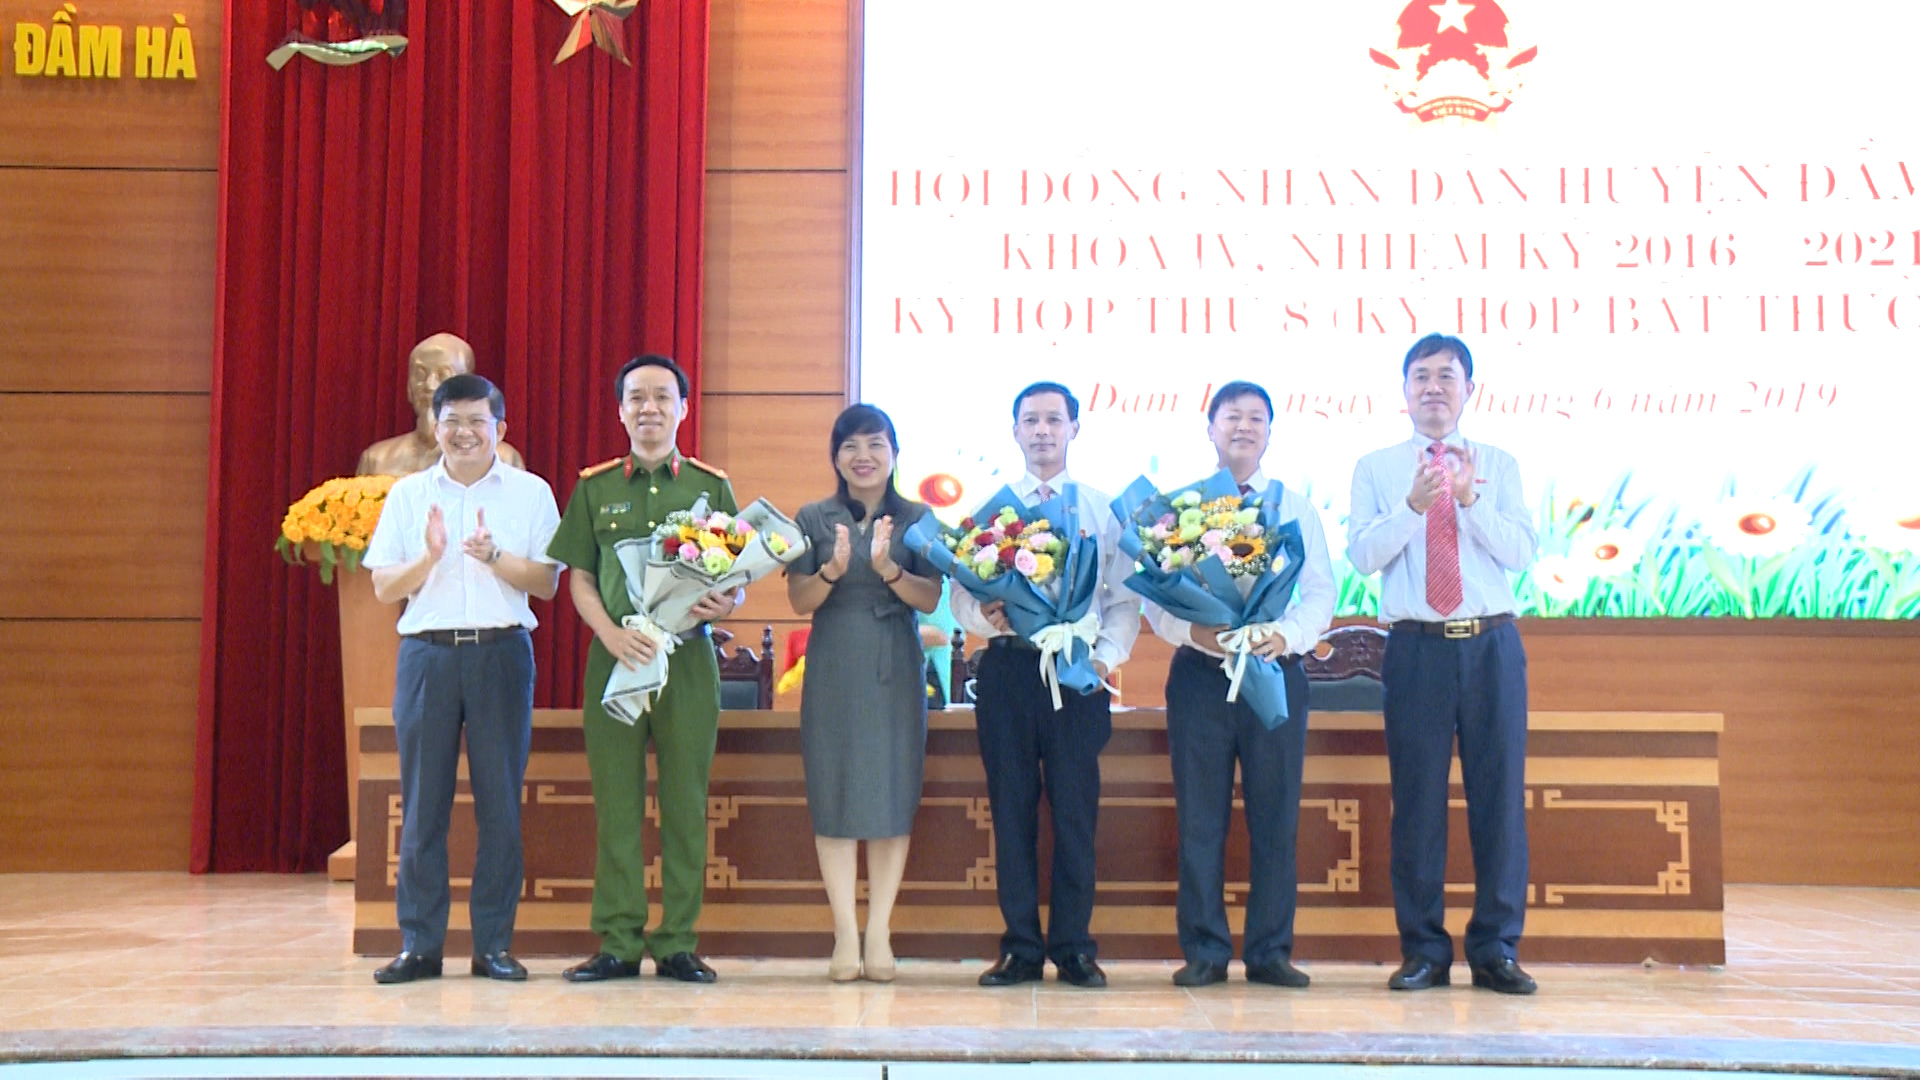 Lãnh đạo huyện tặng hoa chúc mừng các đồng chí trúng cử chức danh Phó chủ tịch HĐND, Ủy viên UBND huyện khóa IV